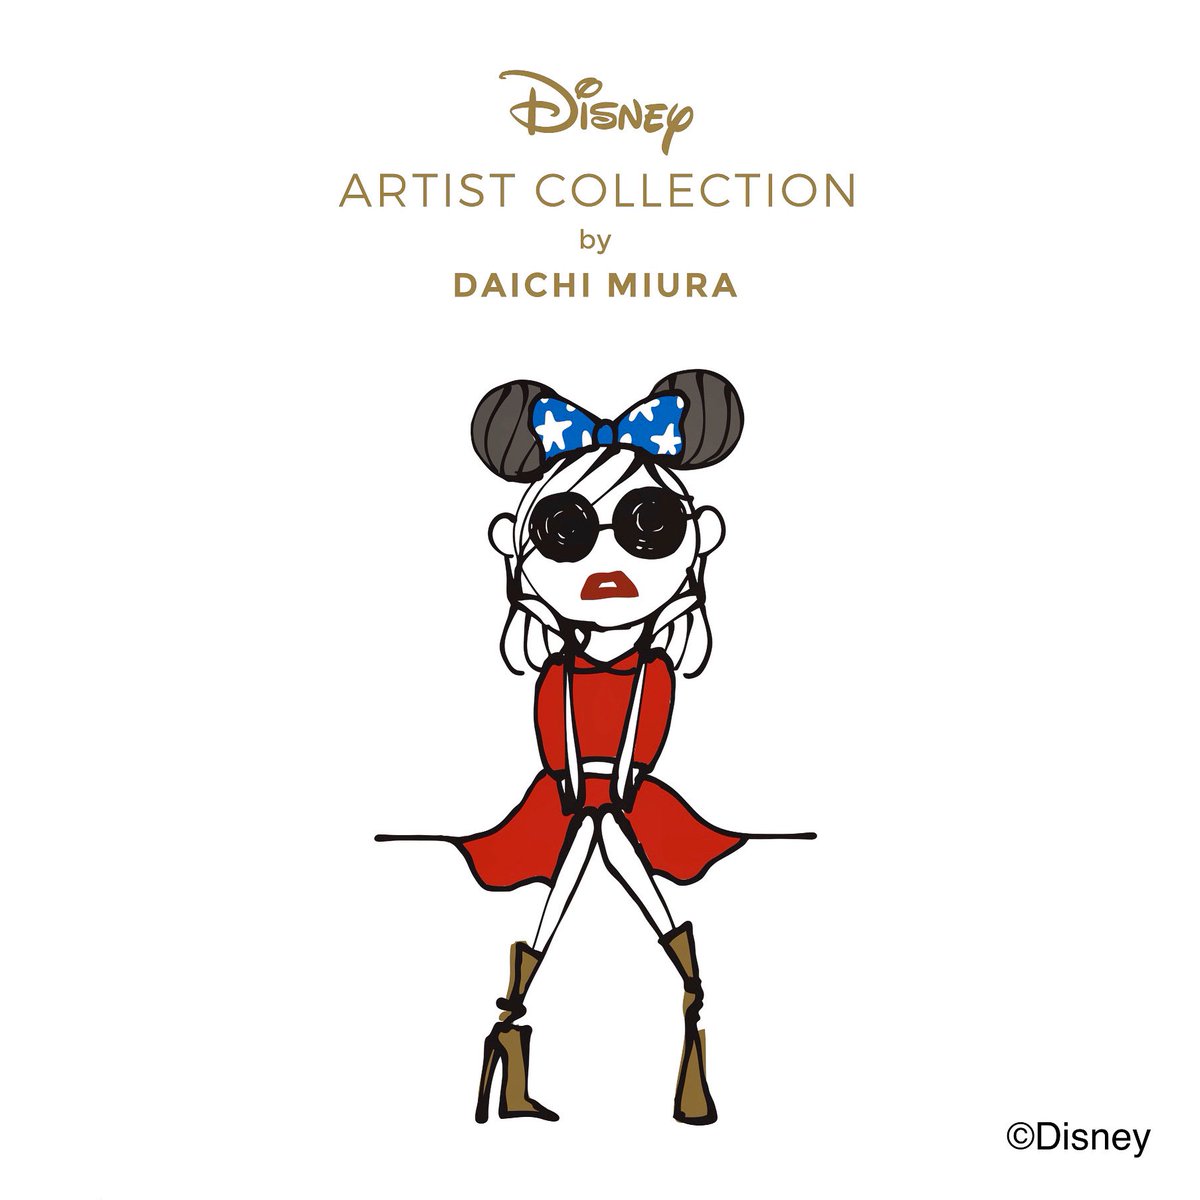 Daichi Miura Sur Twitter Disney Artist Collection By Daichi Miura 11 18のミッキーの誕生日を記念して今回の Didilachignon は ファンタジア の魔法使いの弟子ミッキーにインスパイア 11 12 Tue から全国のディズニーストアとオンライン店で発売致します